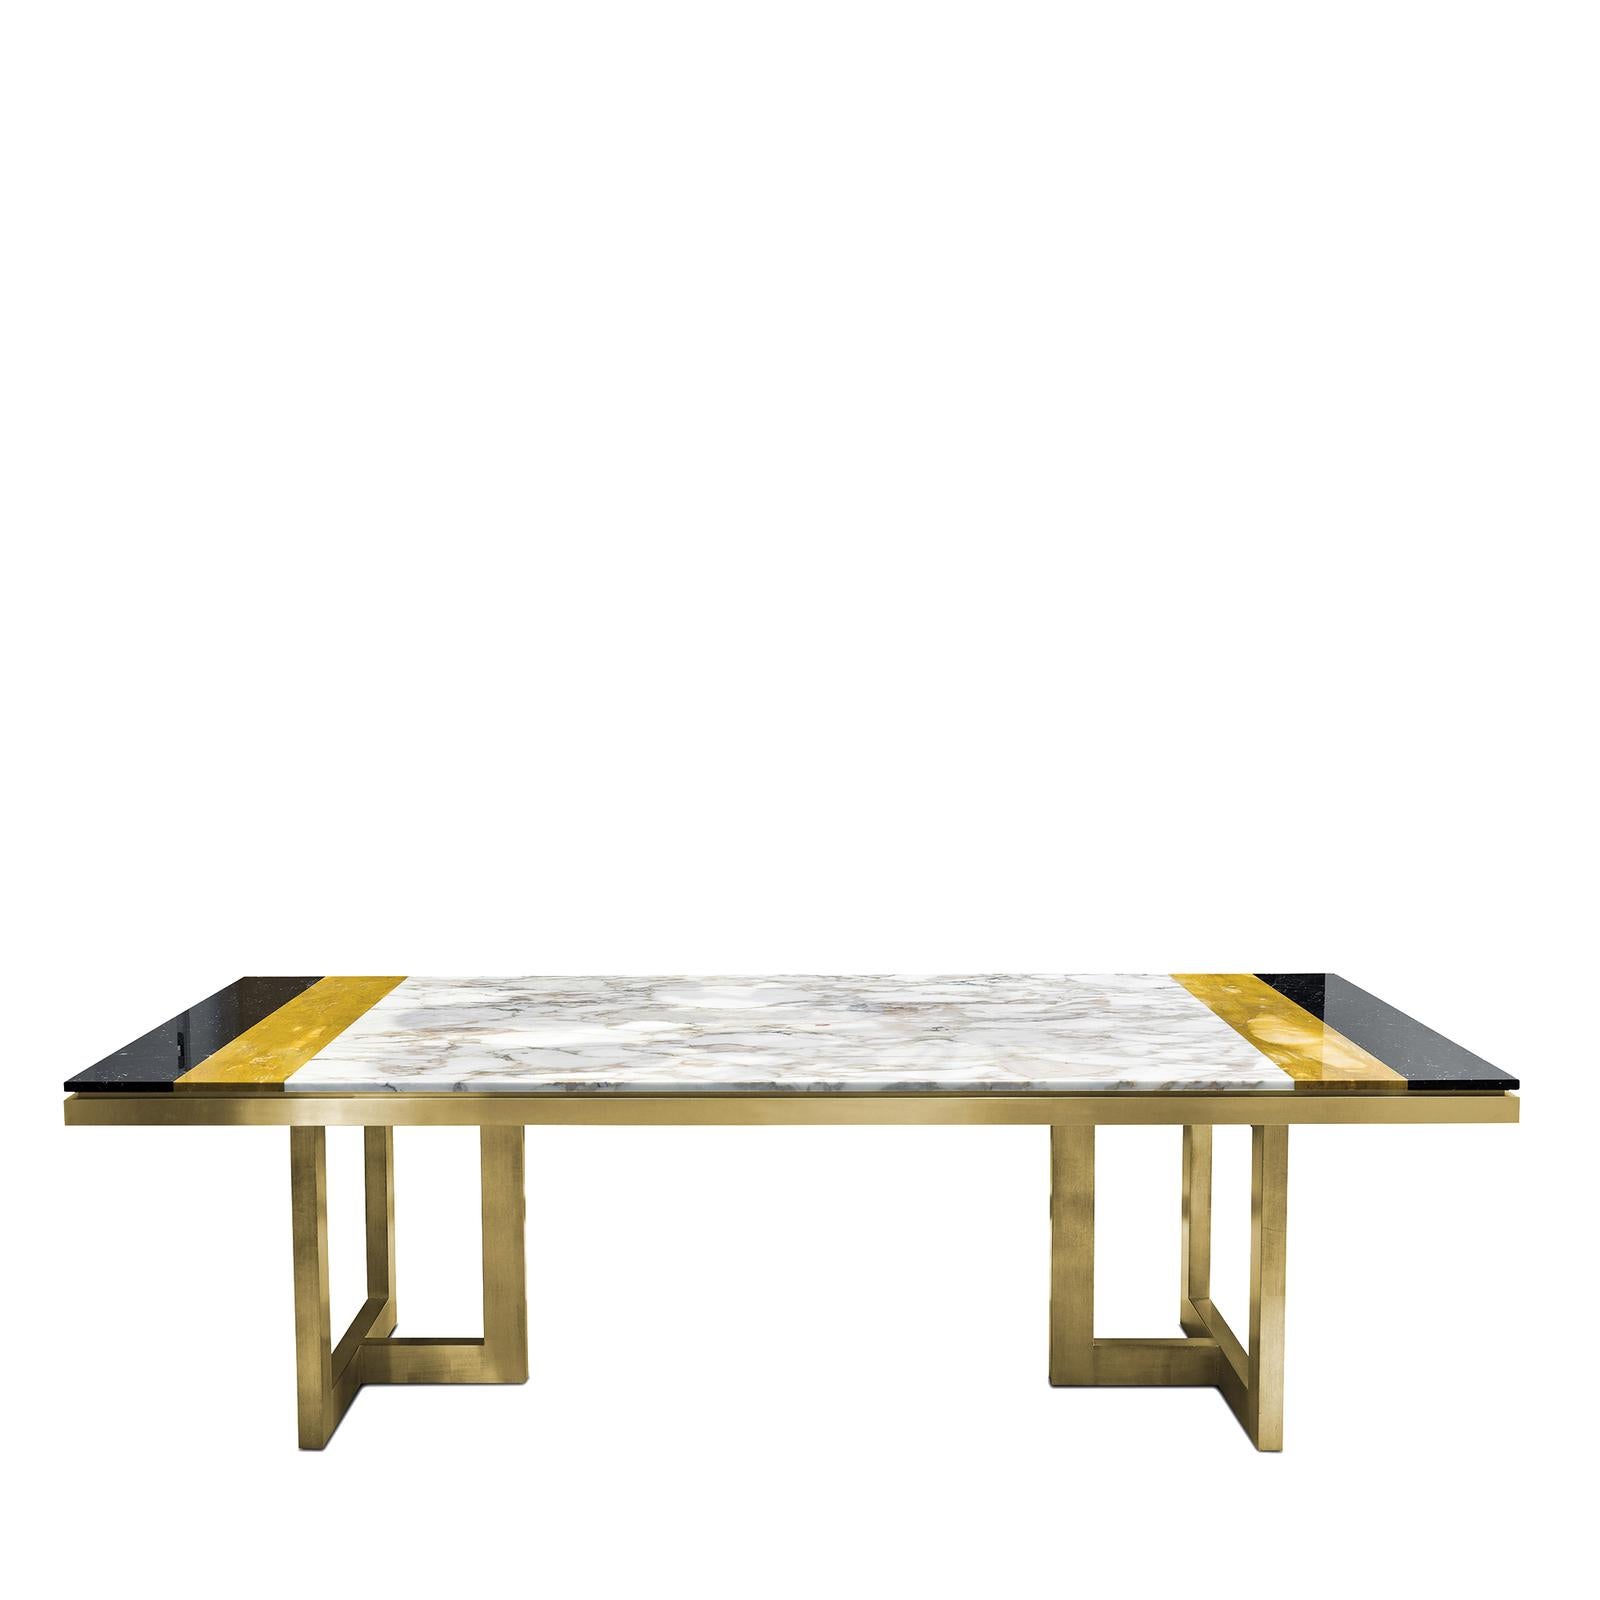 Italian Otello Table in Calcatta and Marquina Marbles by Chiara Provasi For Sale